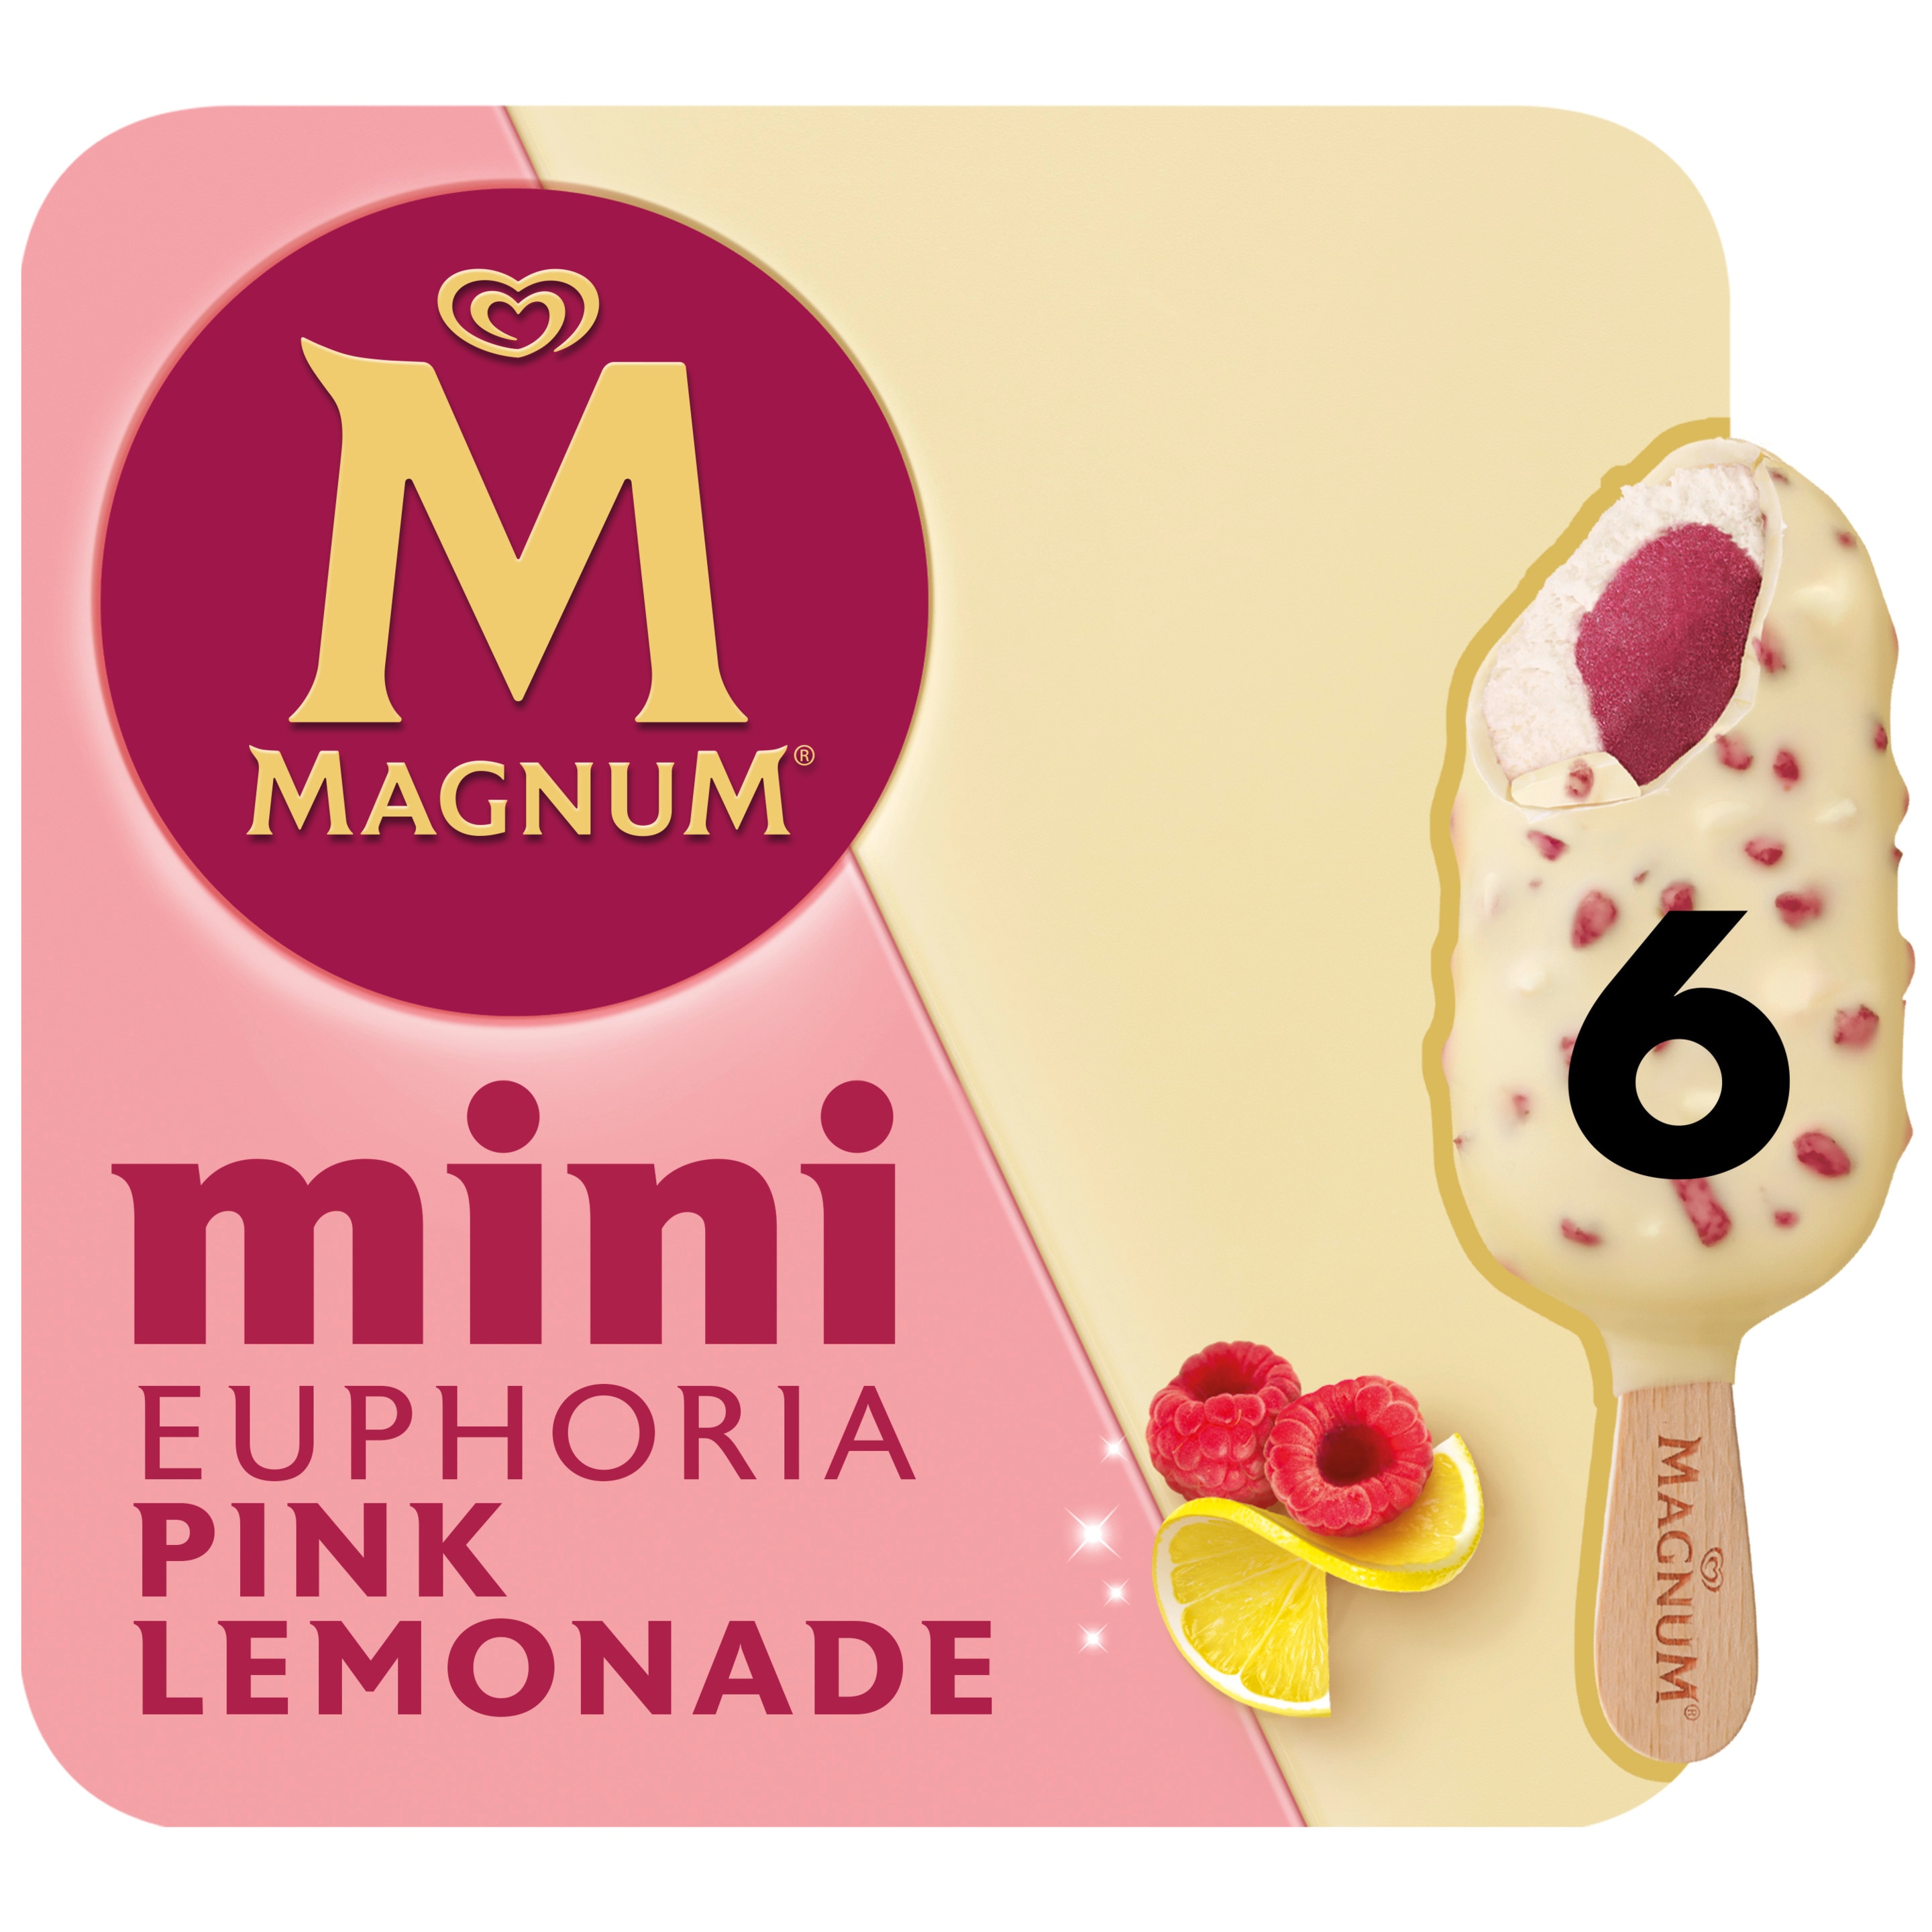 Magnum Mini Euphoria Pink Lemonade 6 x 55ml - Magnum Österreich